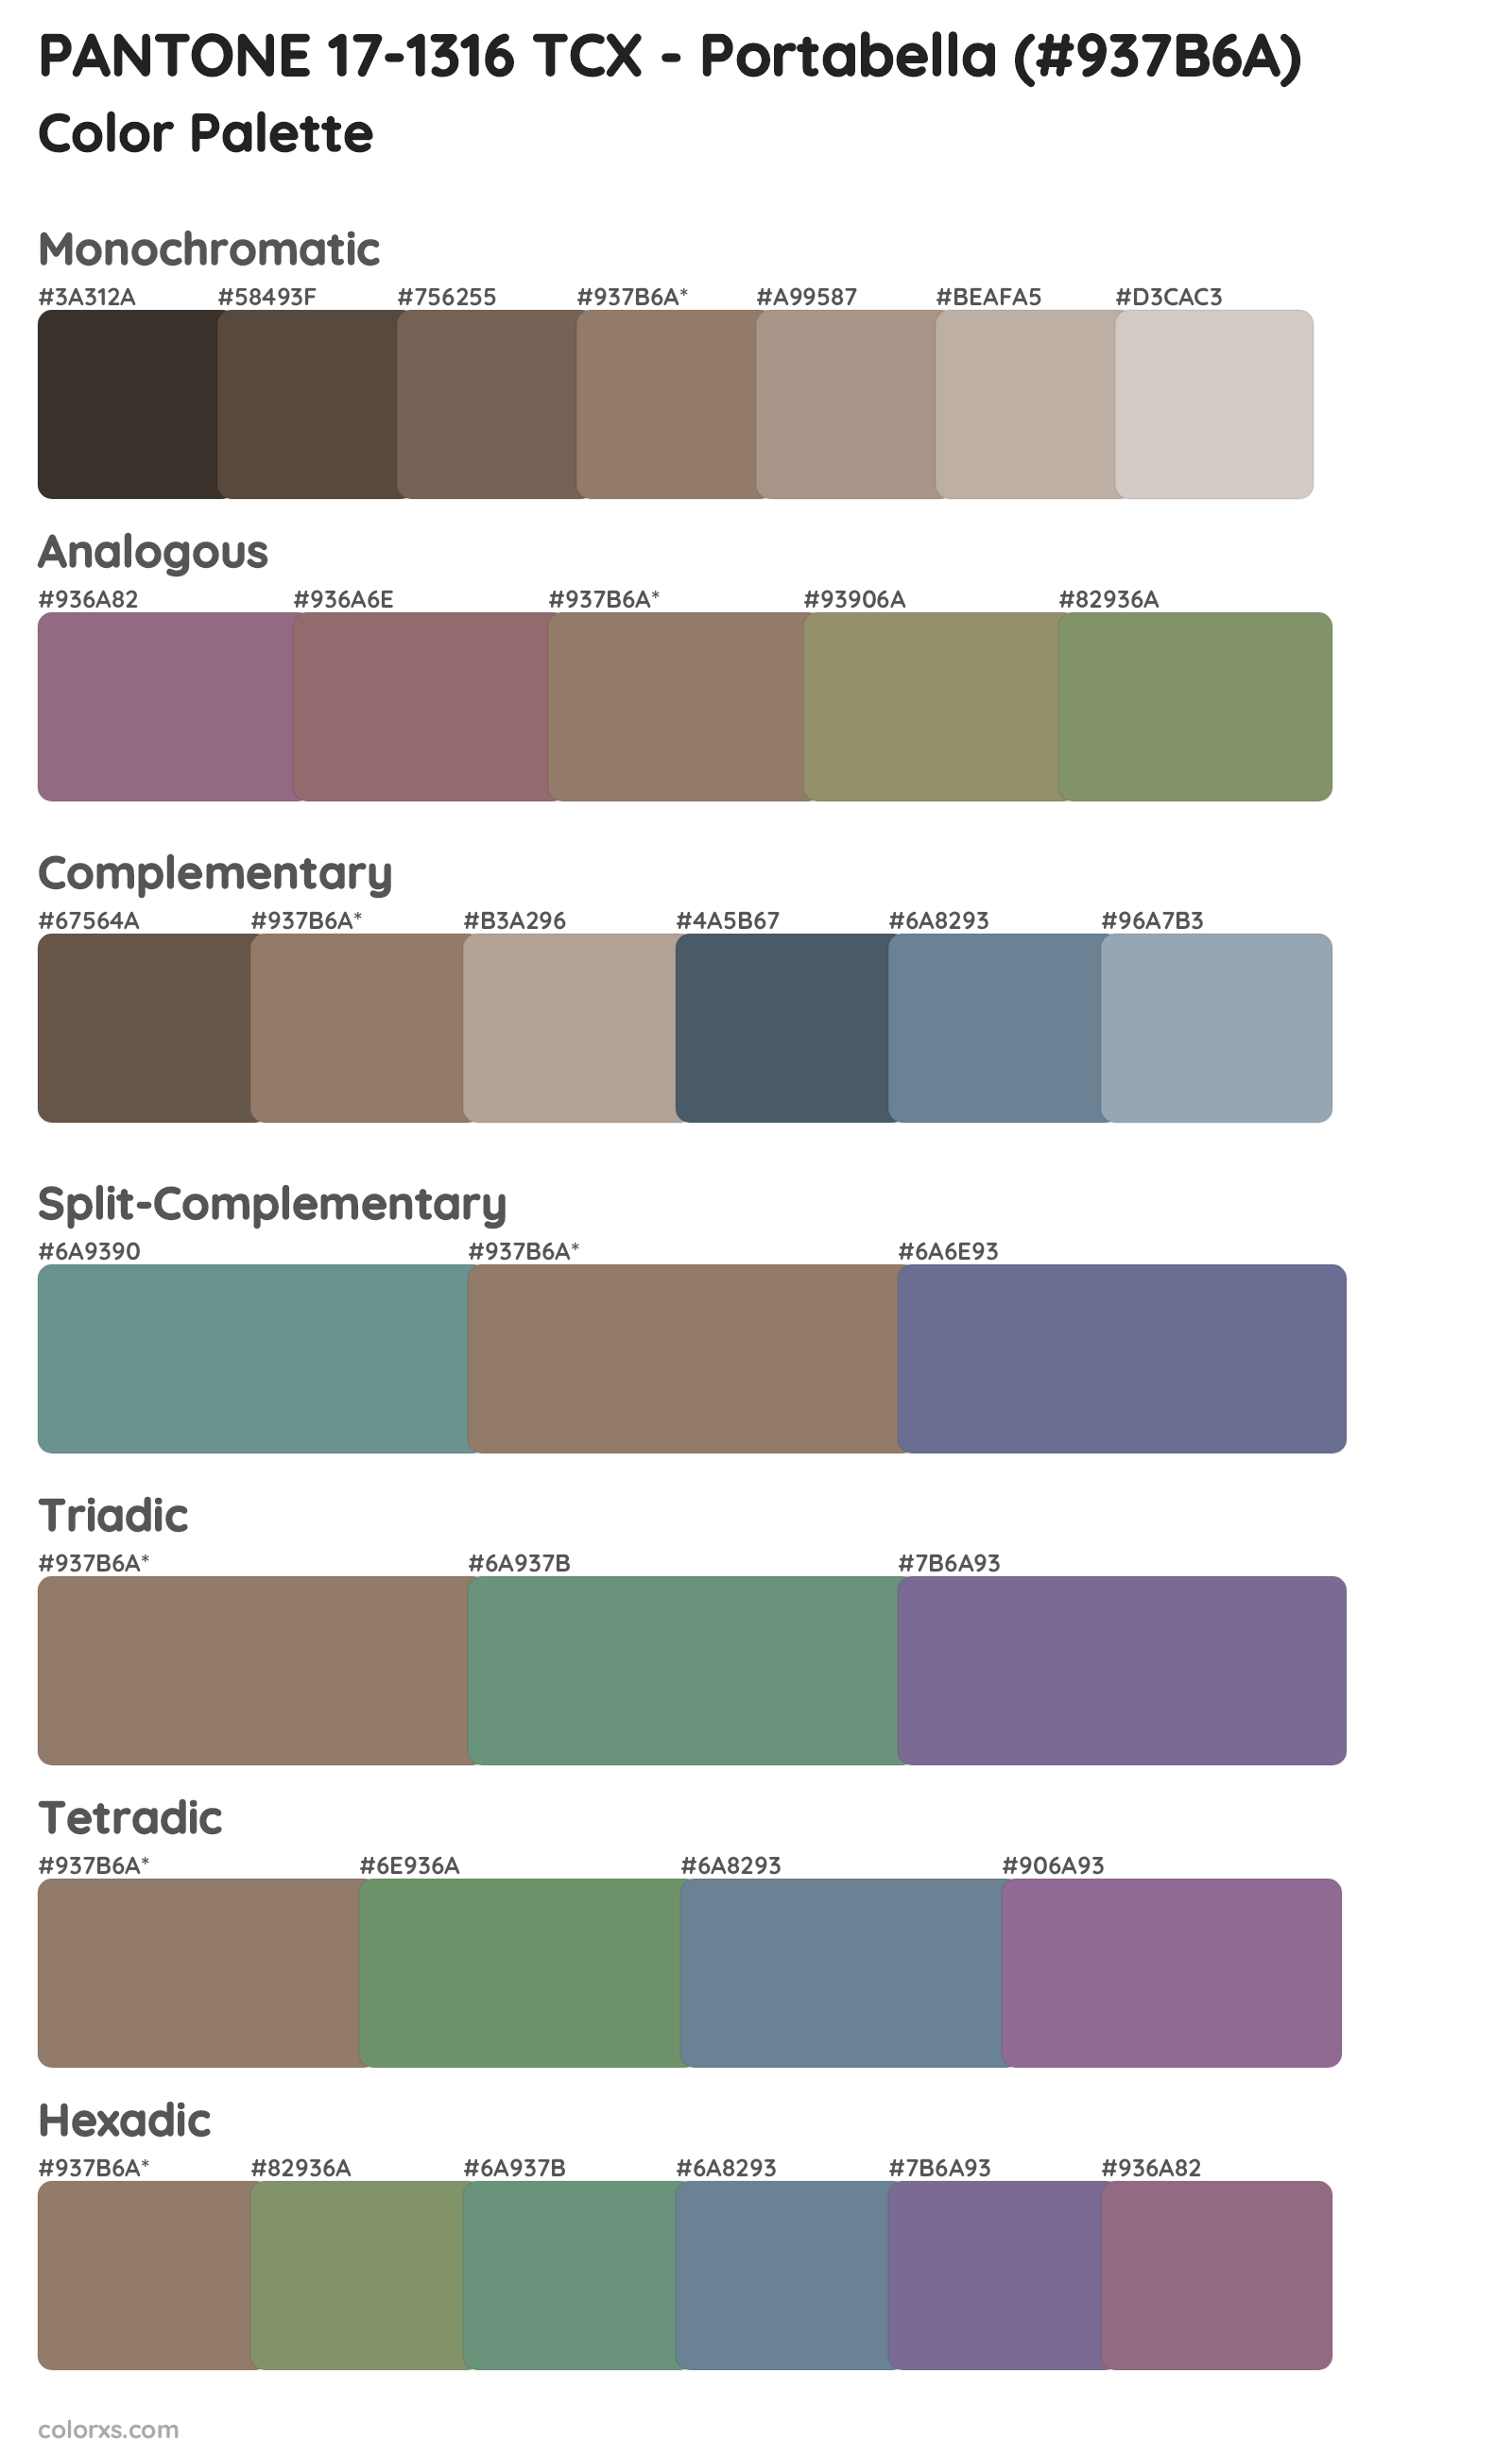 PANTONE 17-1316 TCX - Portabella Color Scheme Palettes